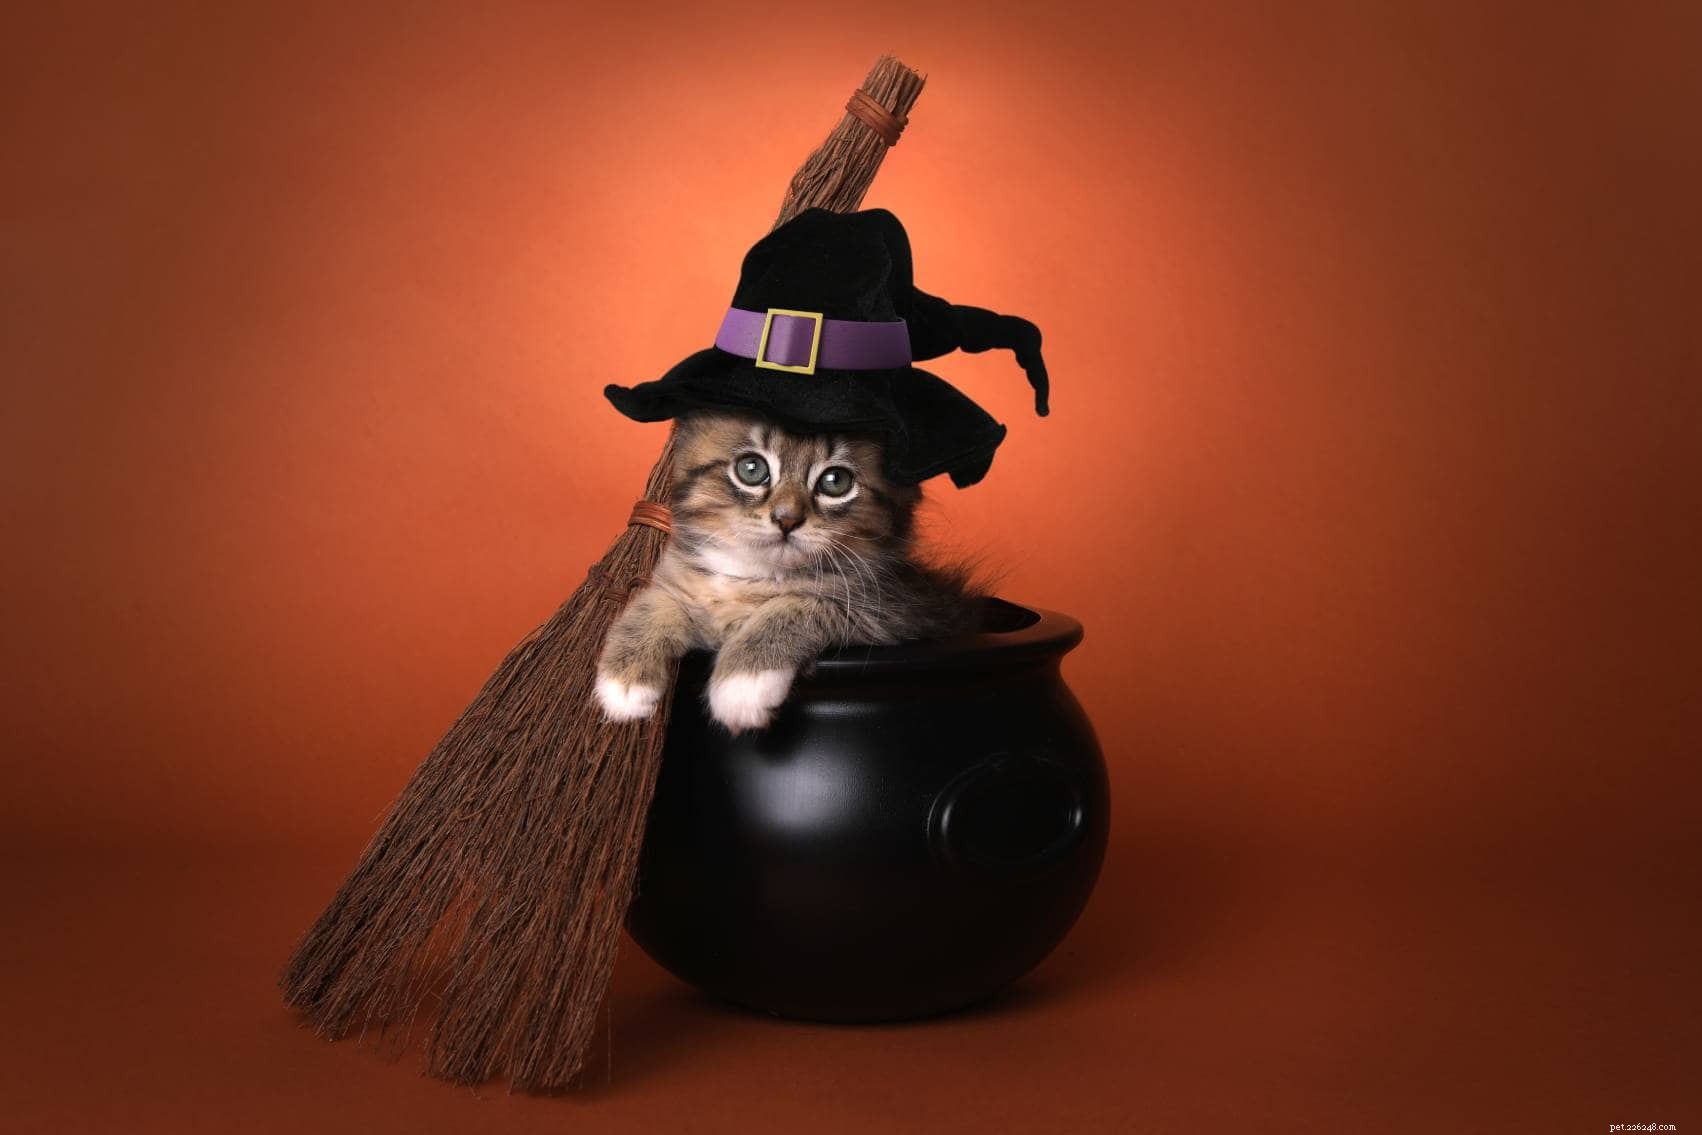 200 хэллоуинских кошачьих имен:варианты с привидениями для вашего жуткого кота